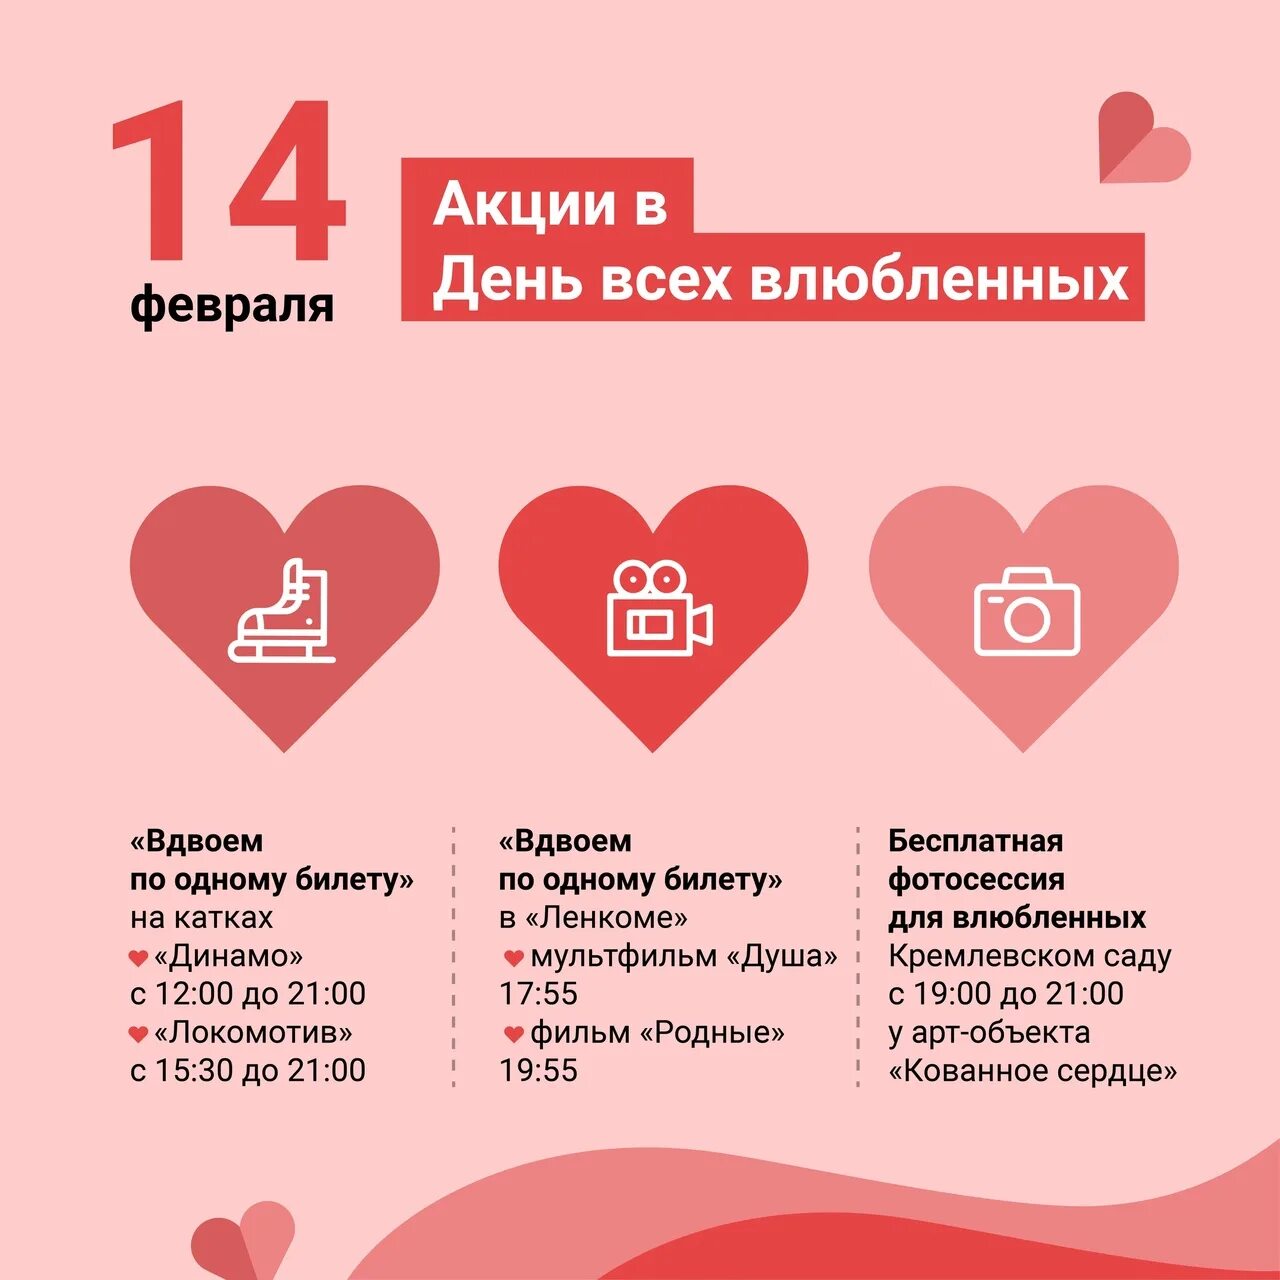 День всех влюбленных в России 14 февраля. Опрос 14 февраля. Планы на 14 февраля. Список услуг на 14 февраля.